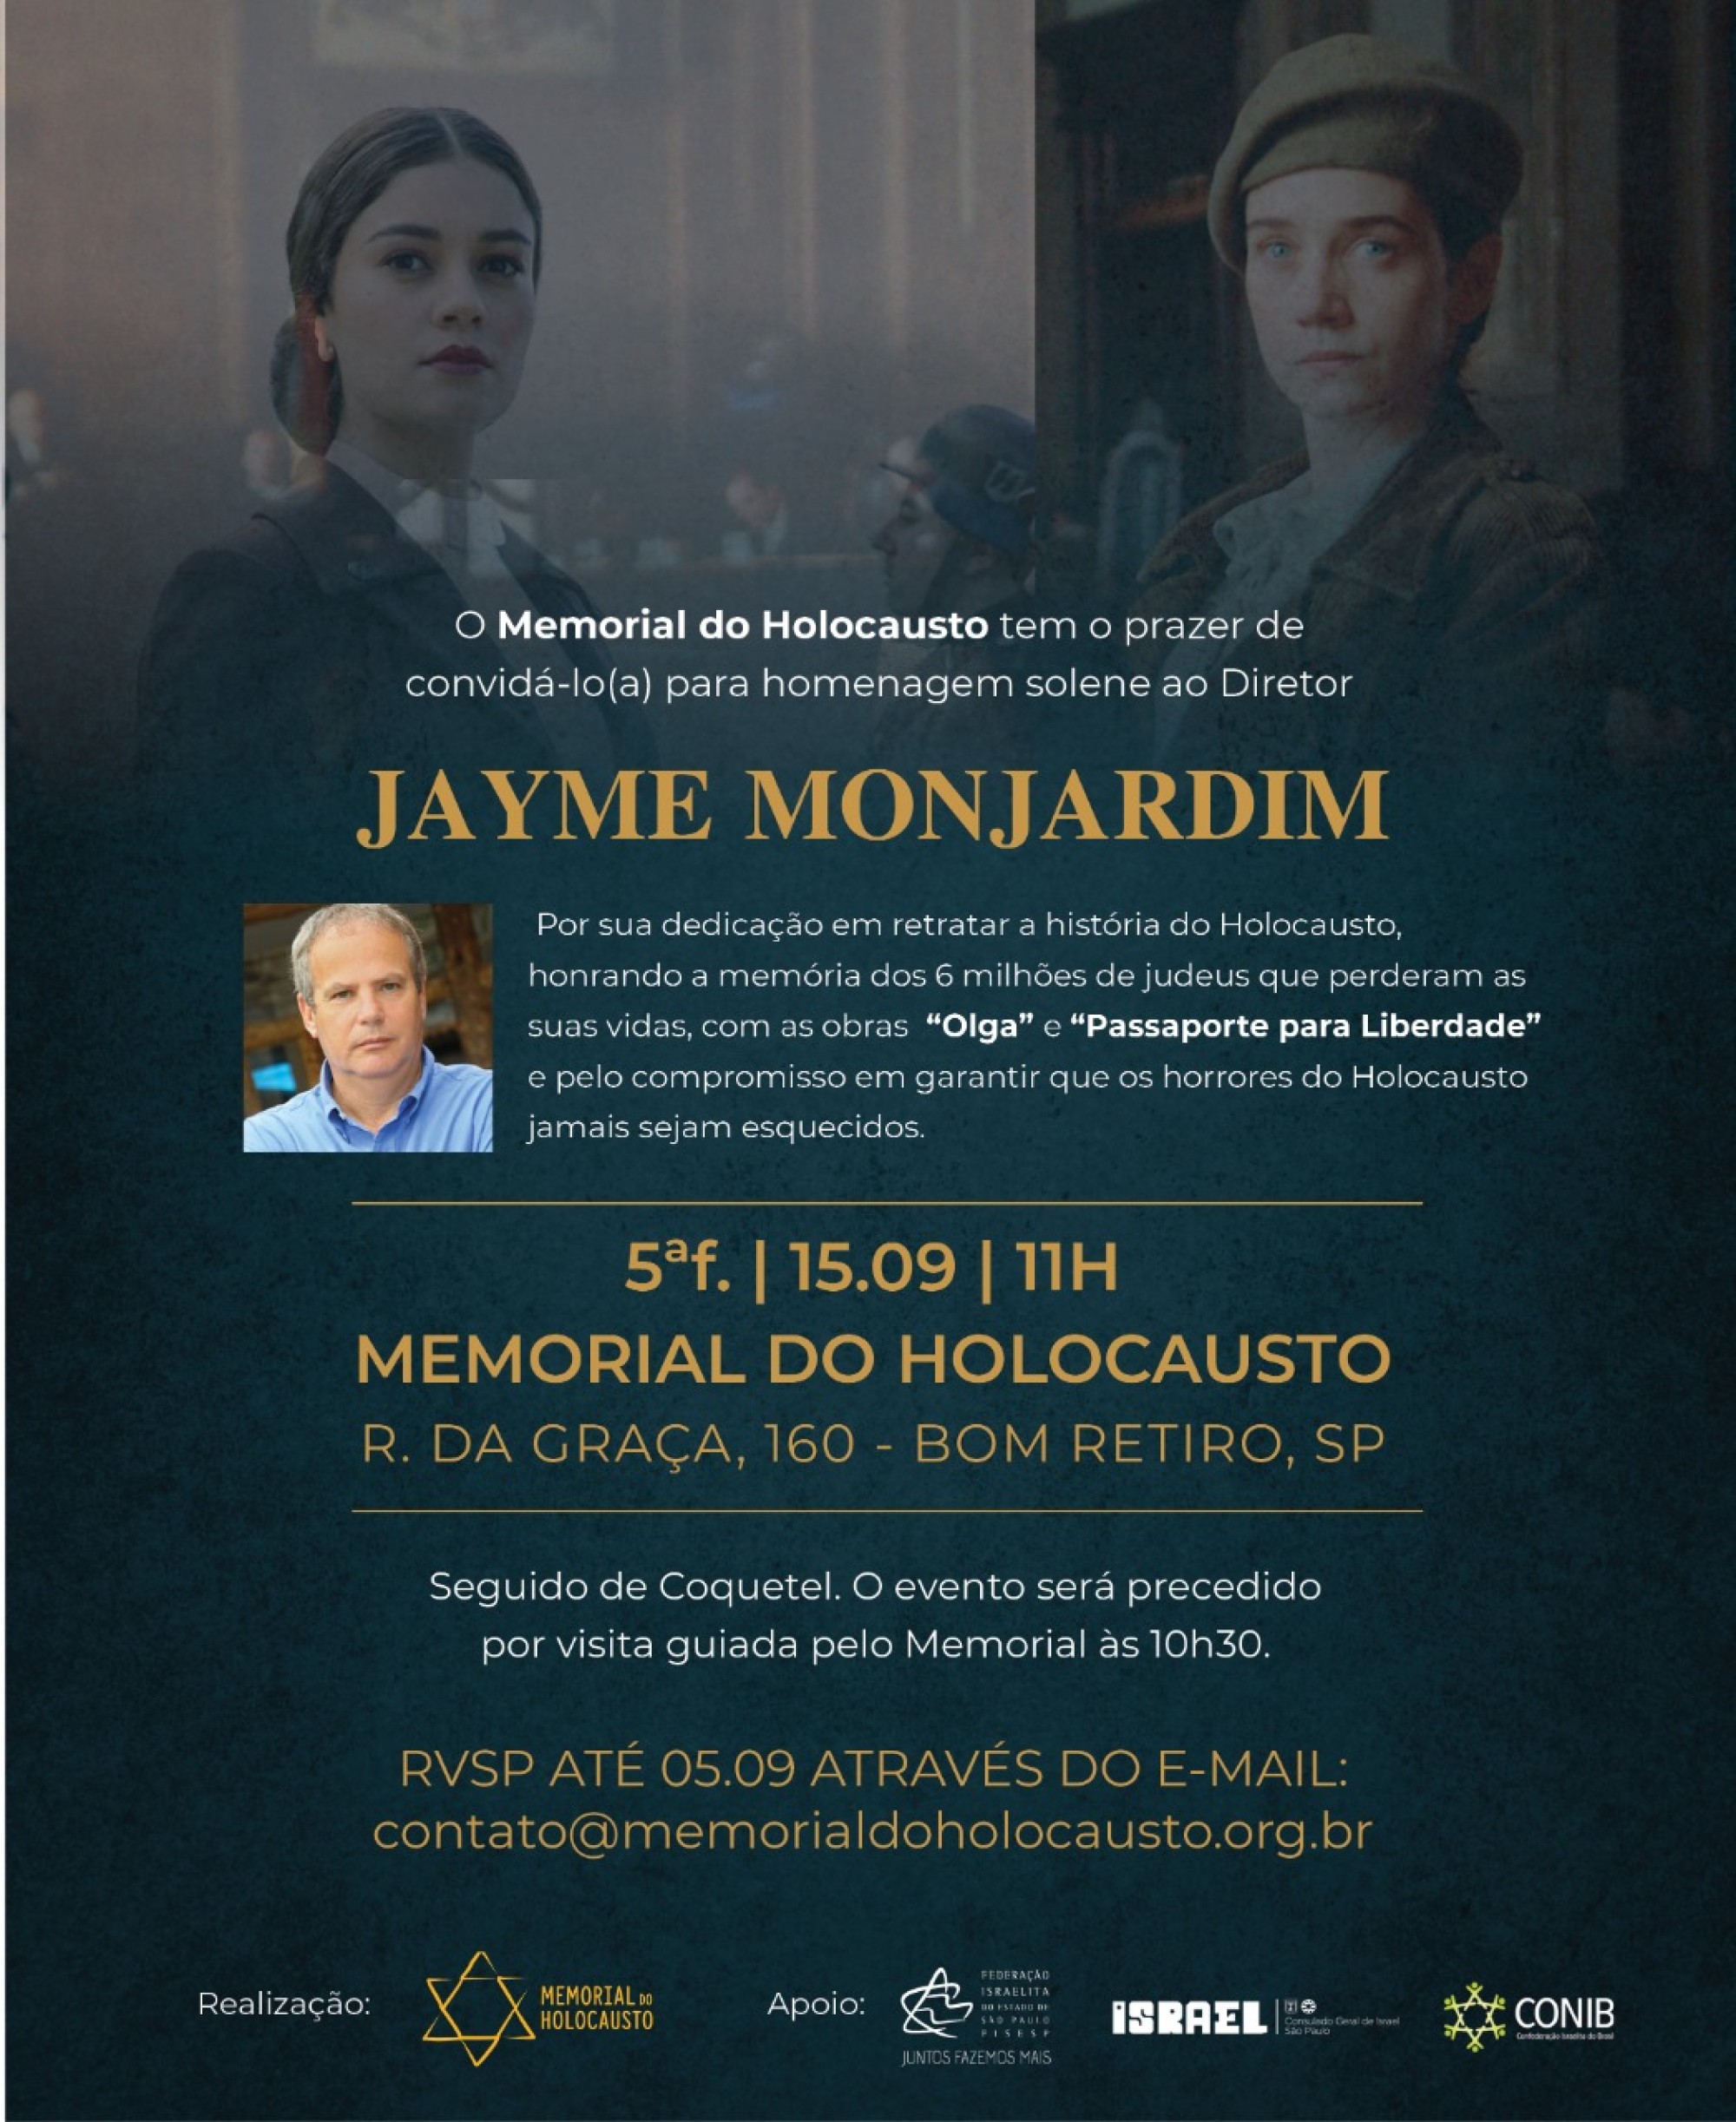 Memorial do Holocausto de São Paulo vai homenagear nesta quinta o diretor de TV Jayme Monjardim  - Fundada em 1948, a CONIB – Confederação Israelita do Brasil é o órgão de representação e coordenação política da comunidade judaica brasileira. 